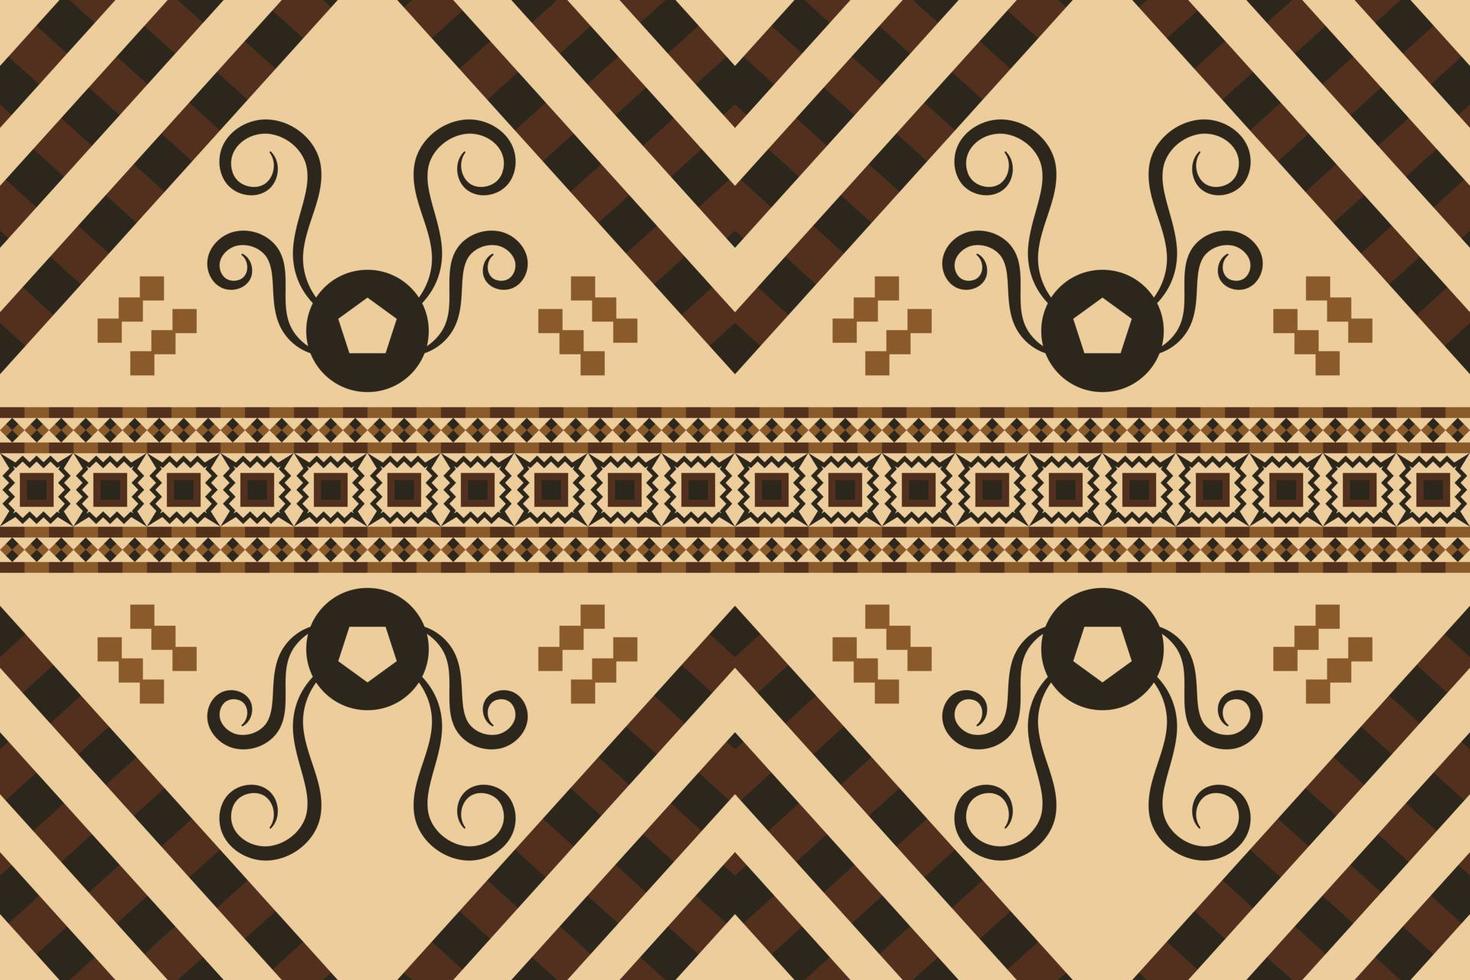 style géométrique de motif de tissu ethnique. sarong motif oriental ethnique aztèque fond orange traditionnel. abstrait, vecteur, illustration. utiliser pour la texture, les vêtements, l'emballage, la décoration, les tapis. vecteur